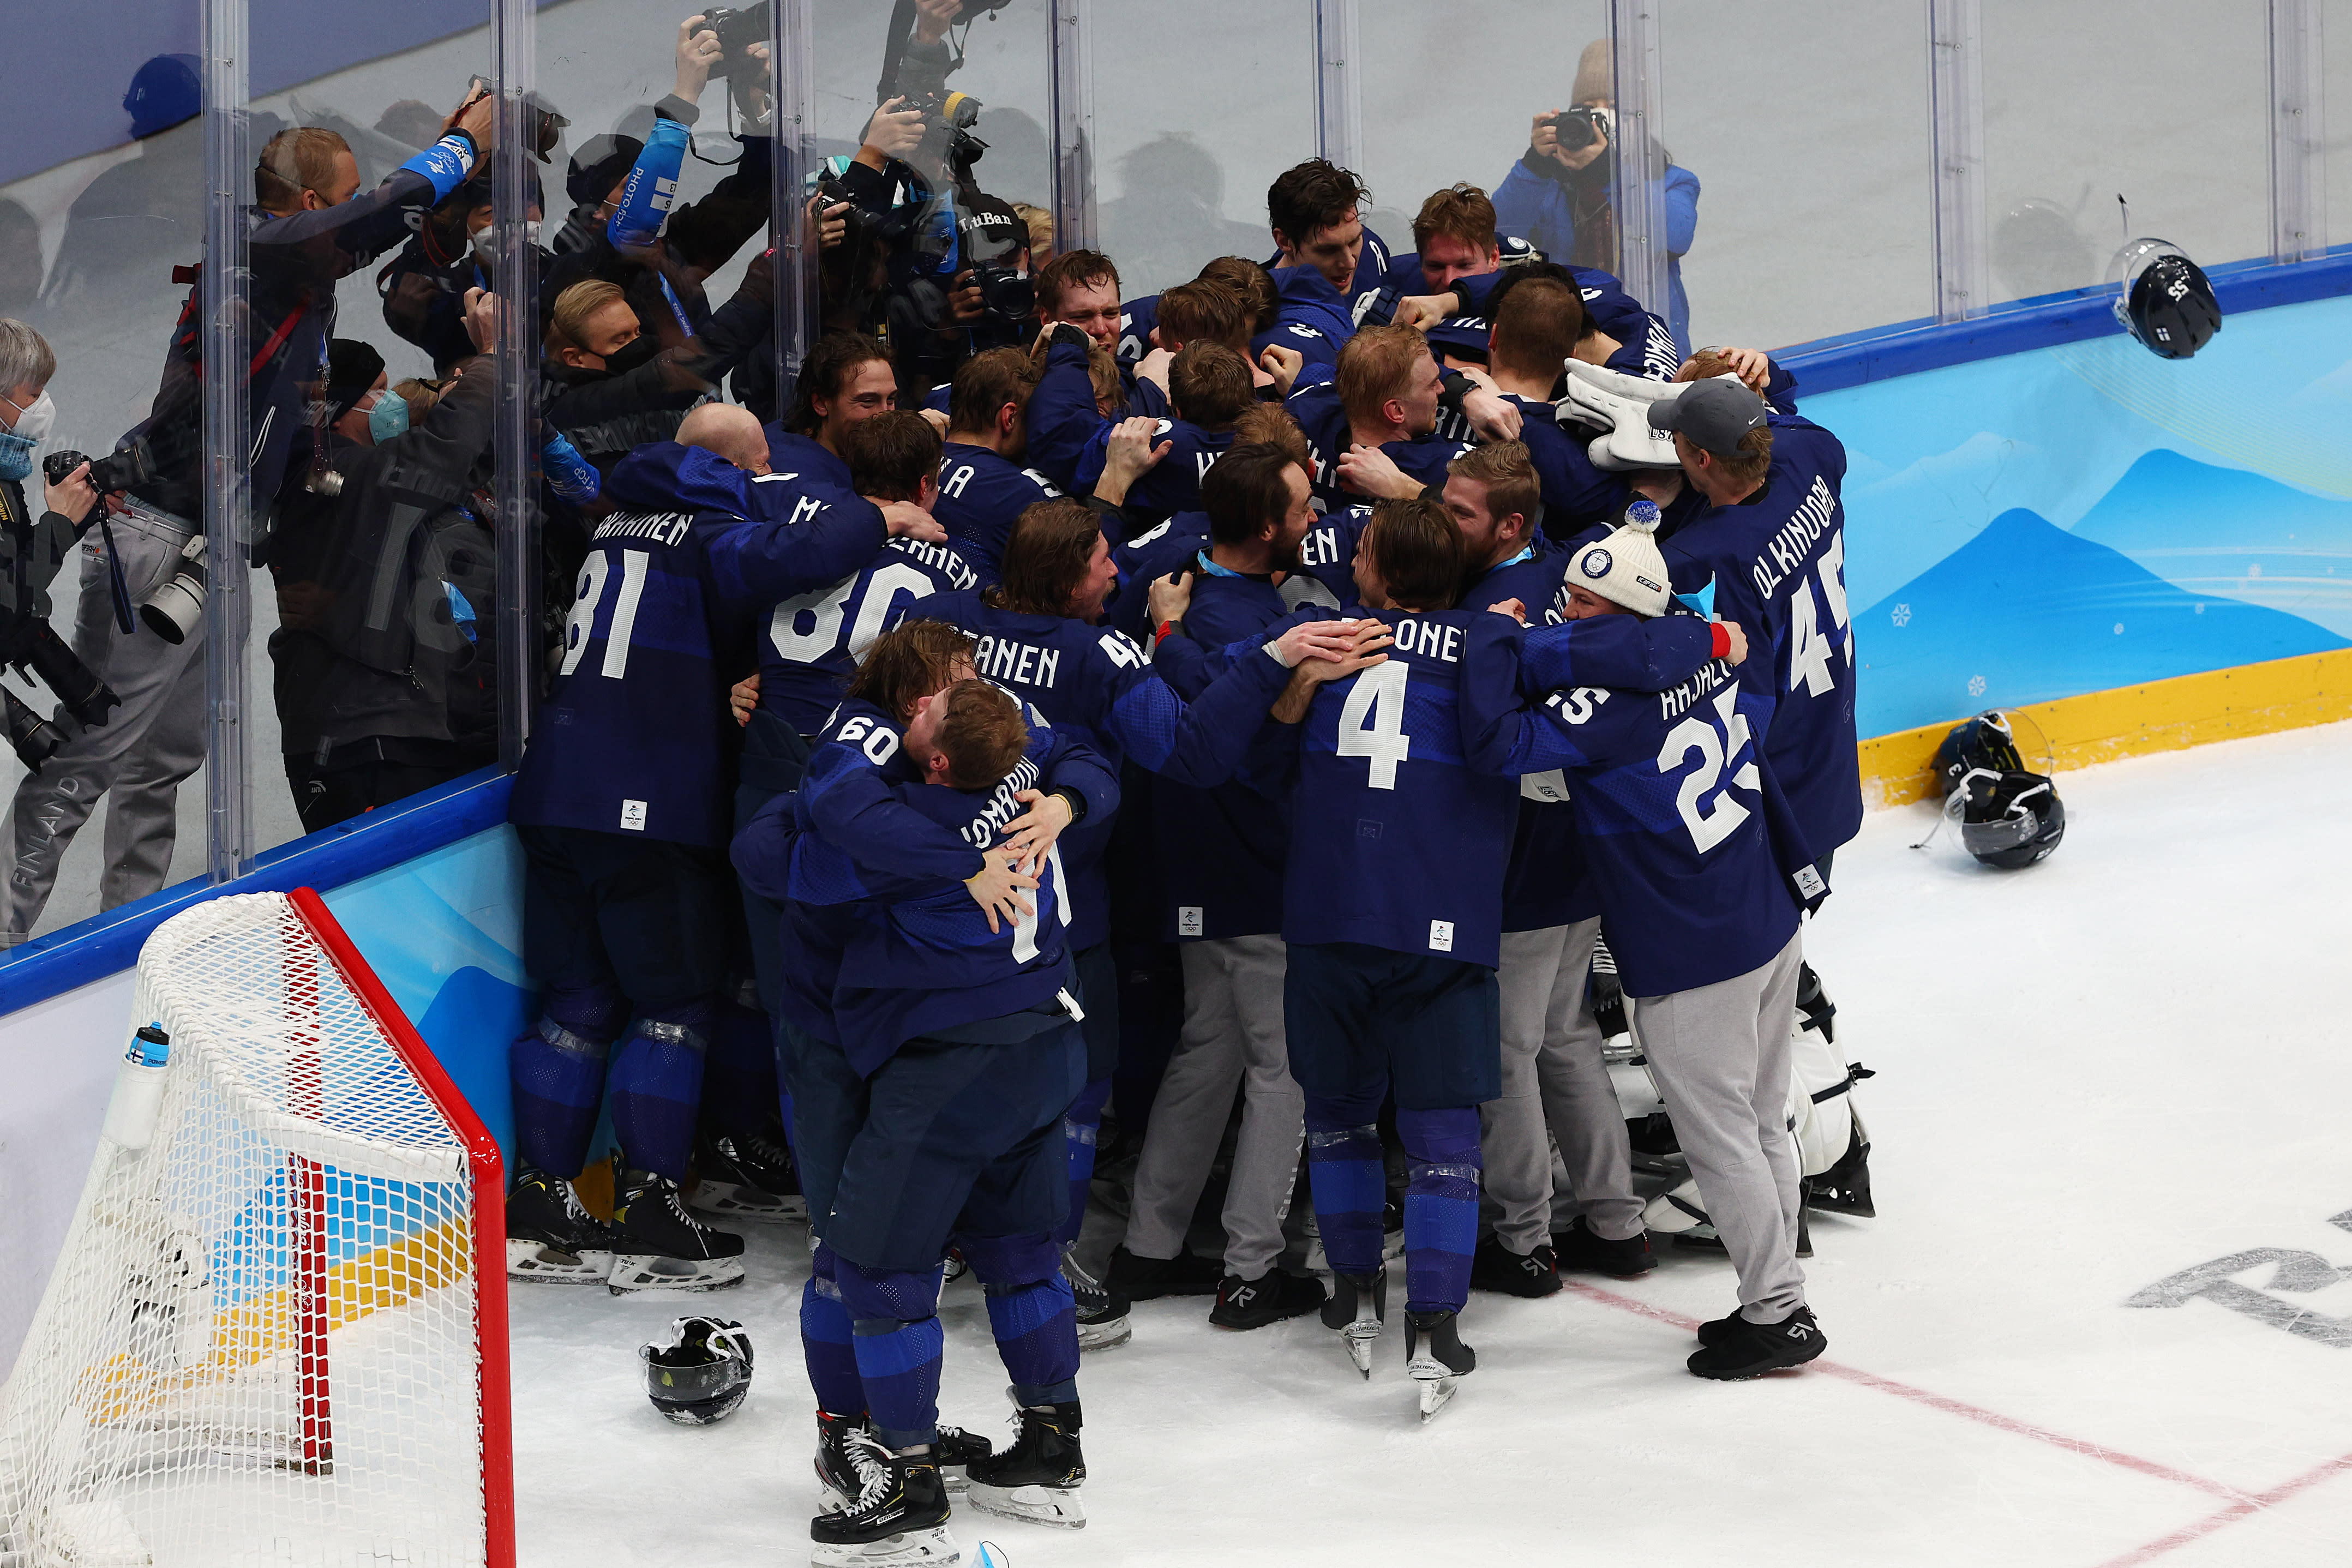 Finnland gewann die erste Eishockey-Goldmedaille bei den Olympischen Spielen in Peking